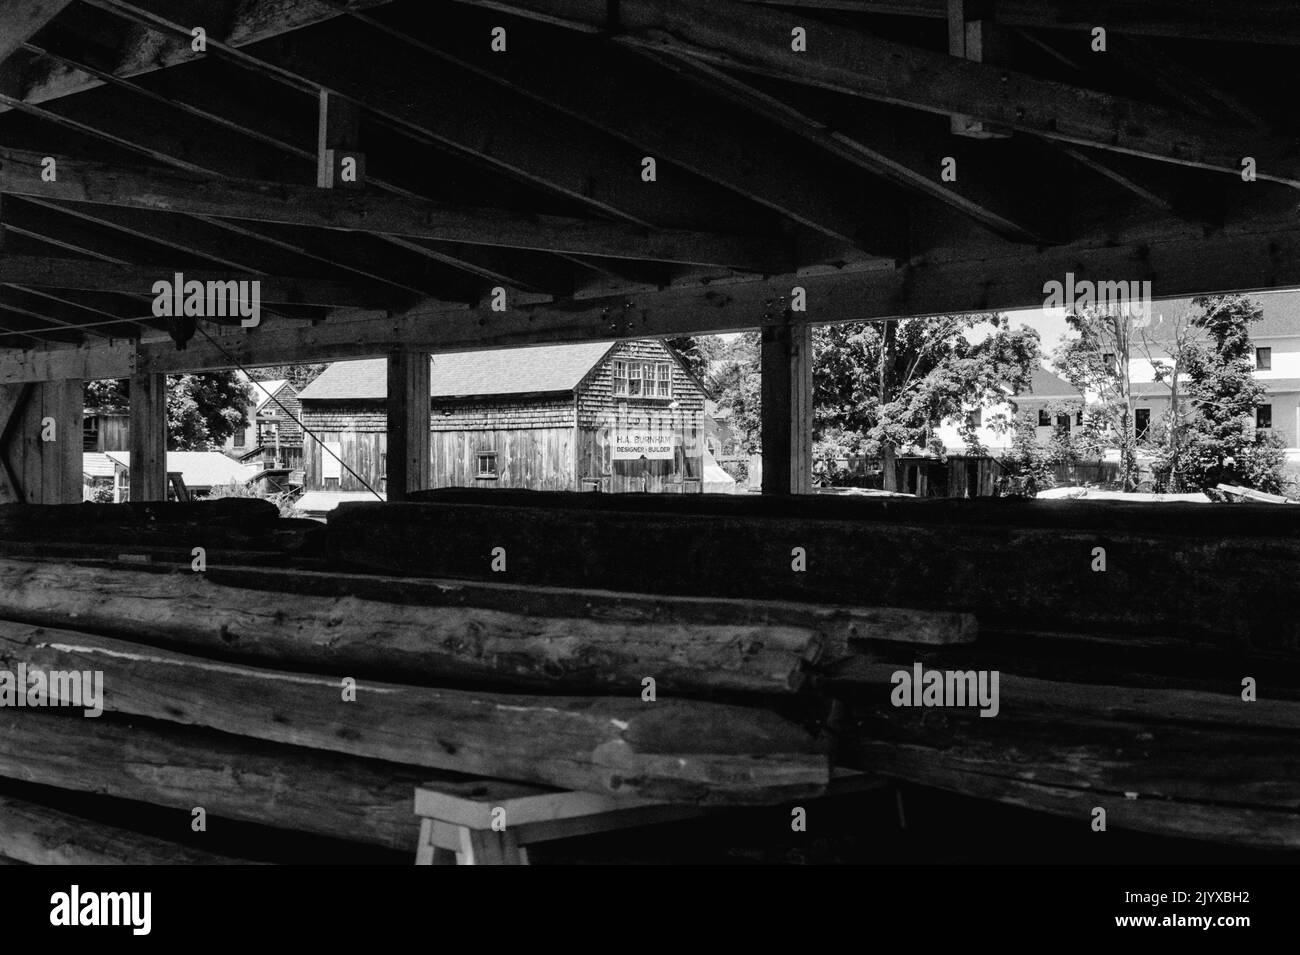 Une vue sur une usine abandonnée avec un panneau indiquant H A Burnham est vue à travers la grange de bois au musée de la construction navale d'Essex - Essex, Massachusetts Banque D'Images